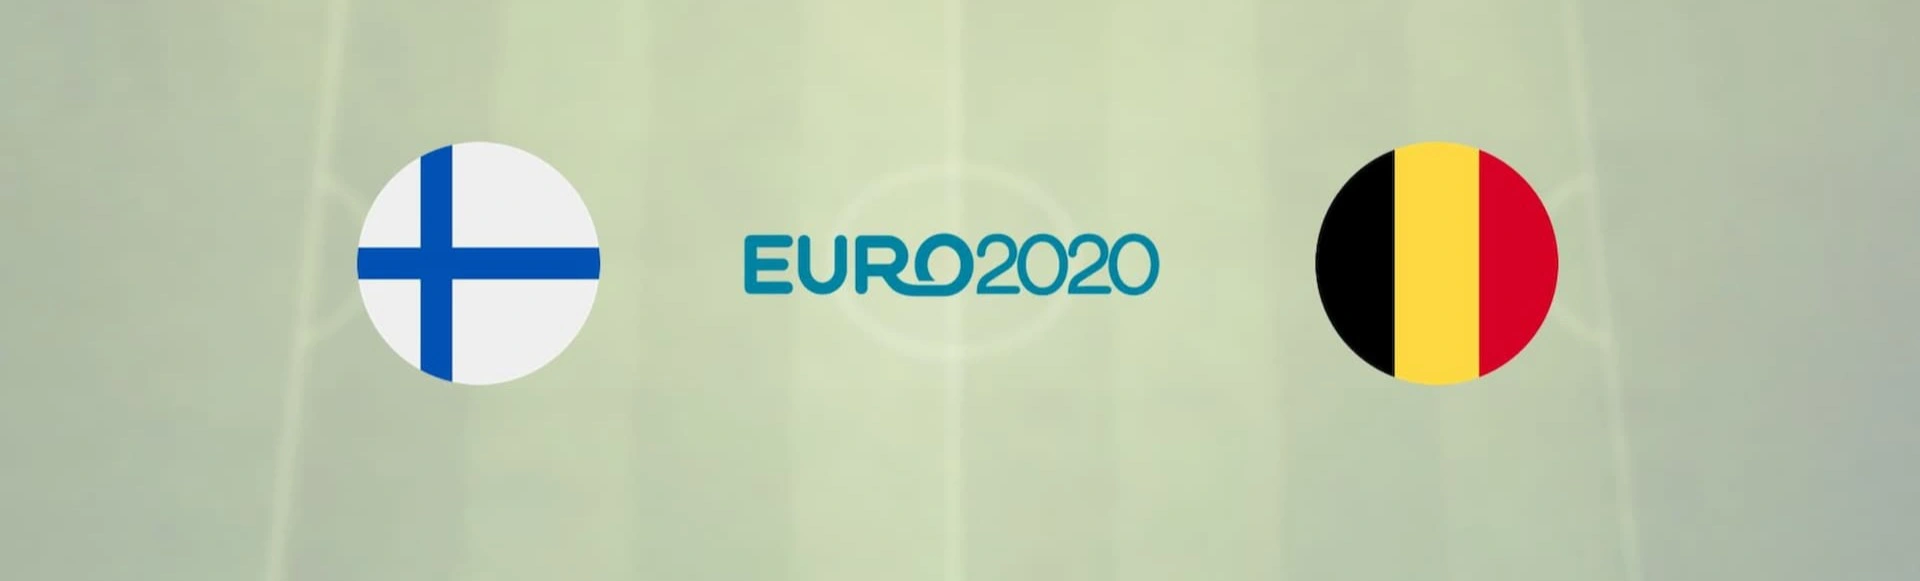 Финляндия - Бельгия, Евро-2020, Группа B